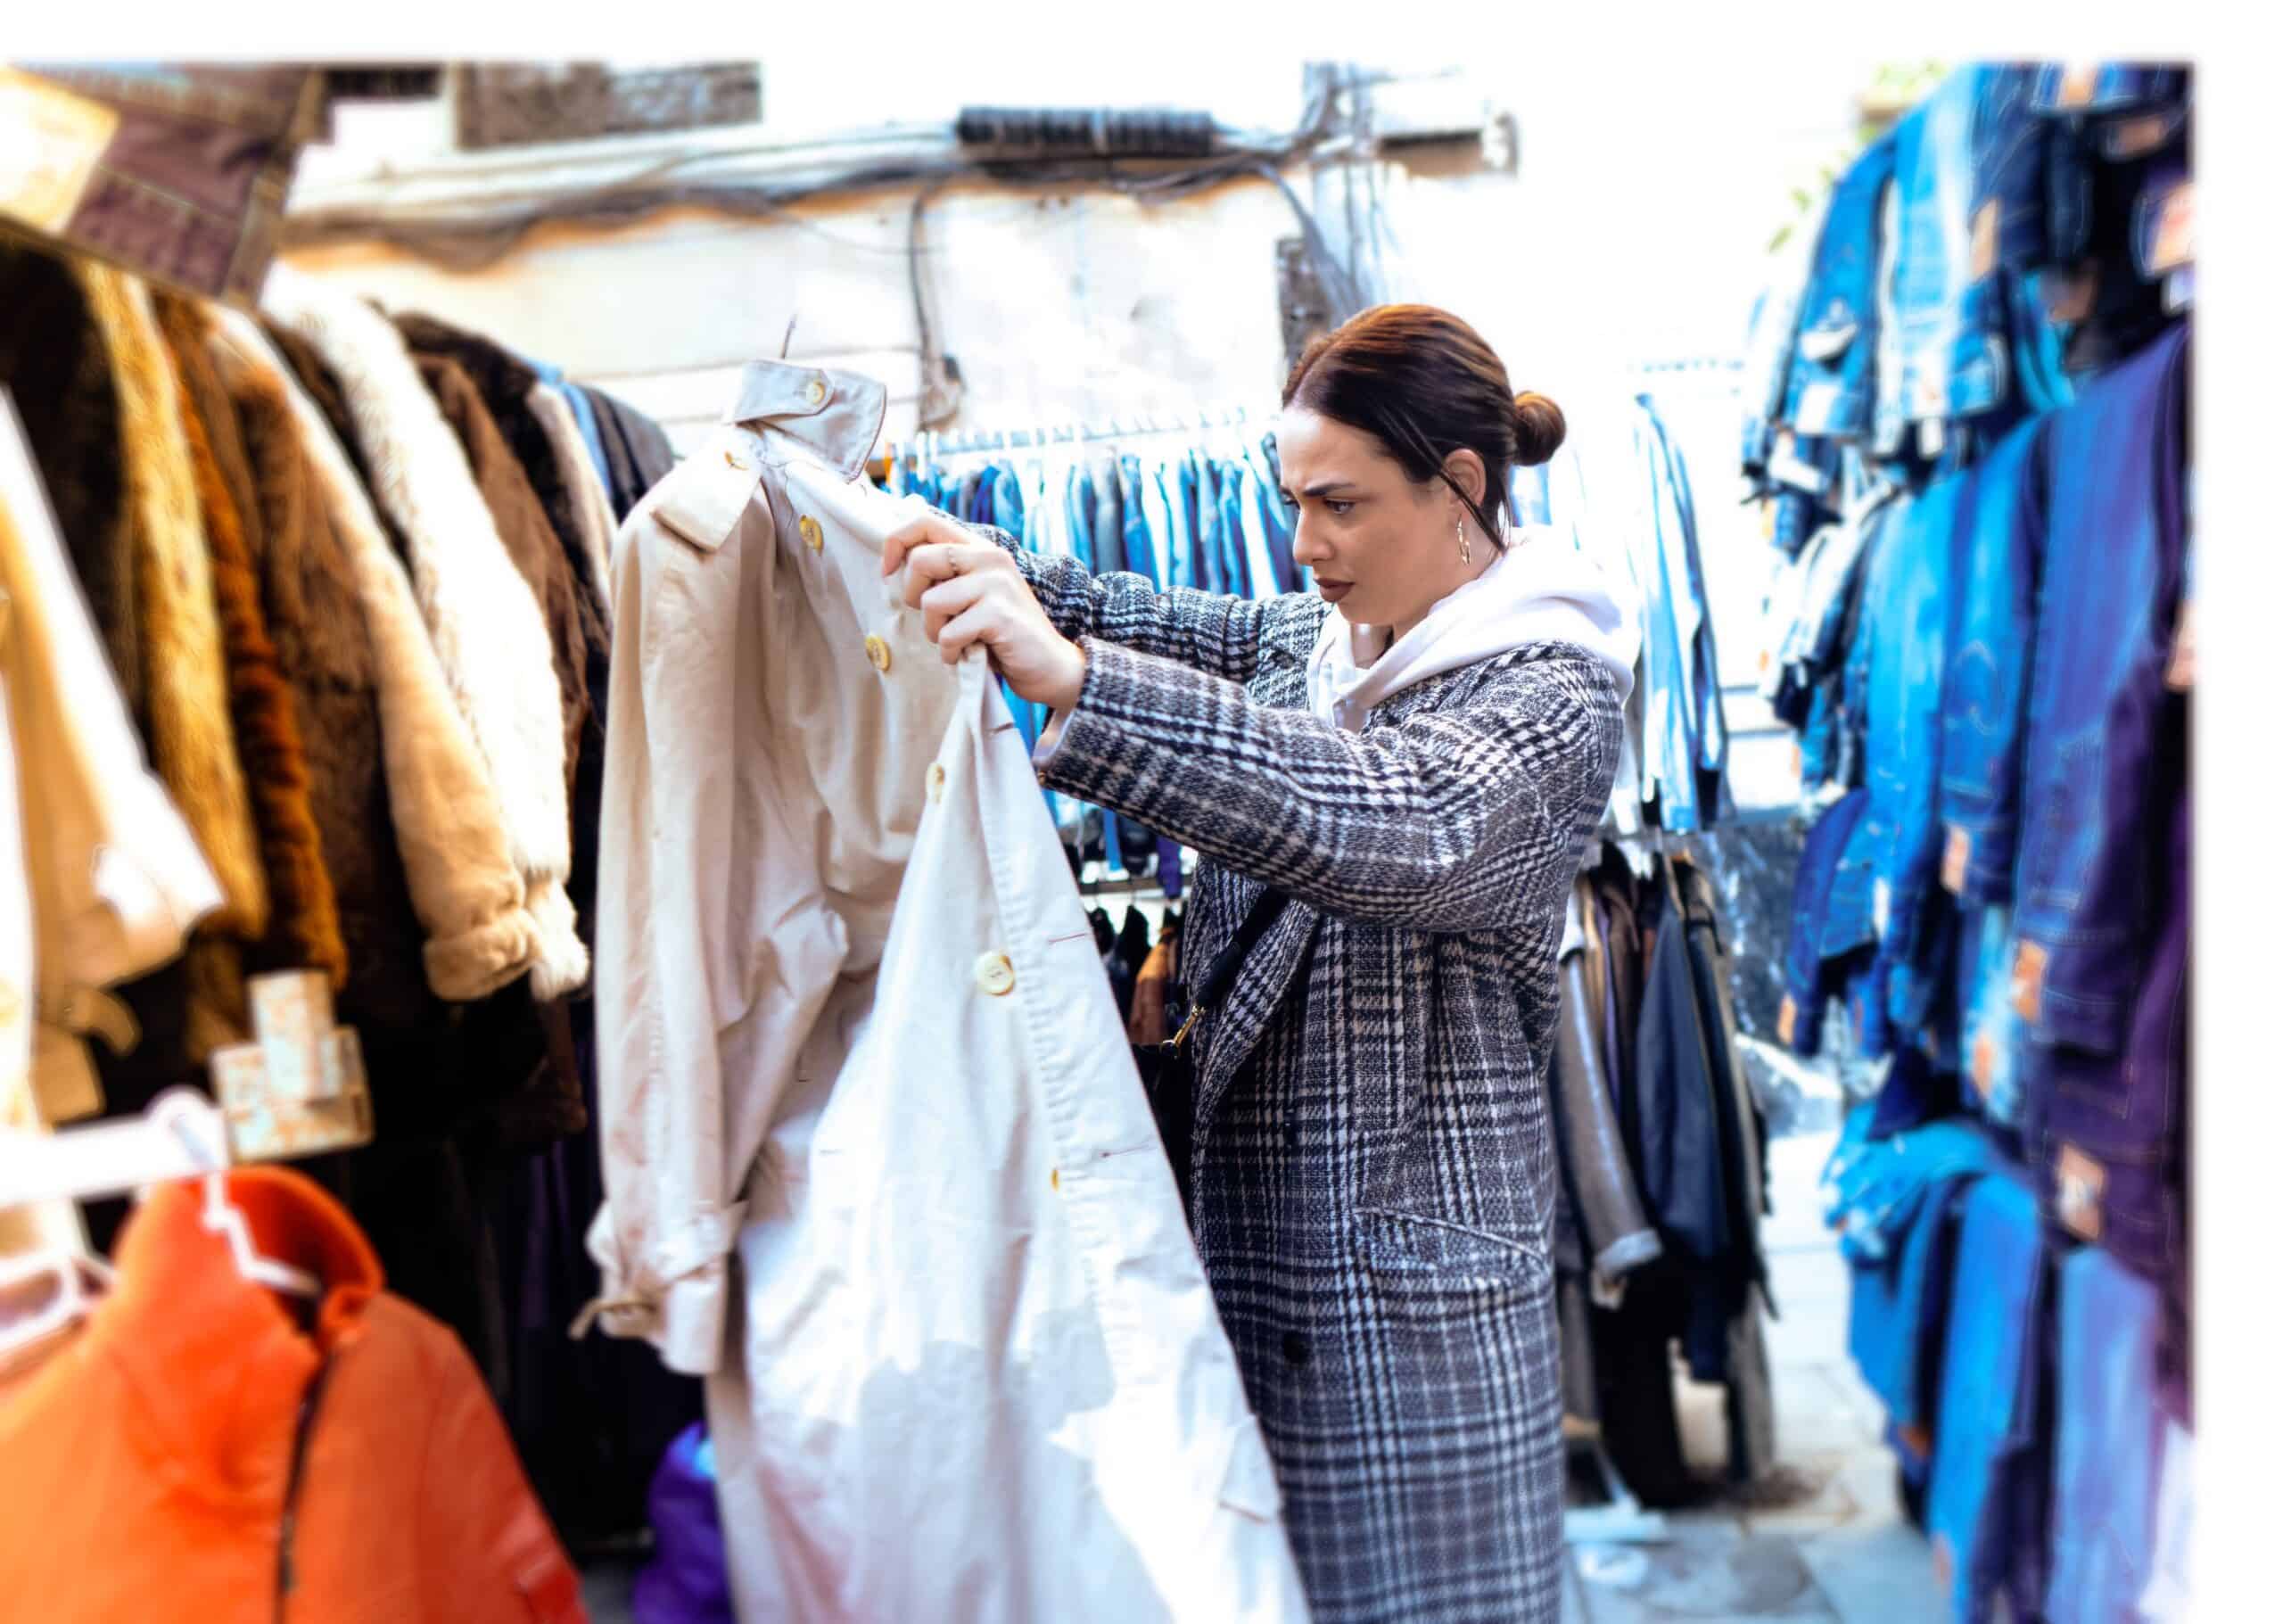 Frau sucht Klamotten auf Flohmarkt zum Reselling 